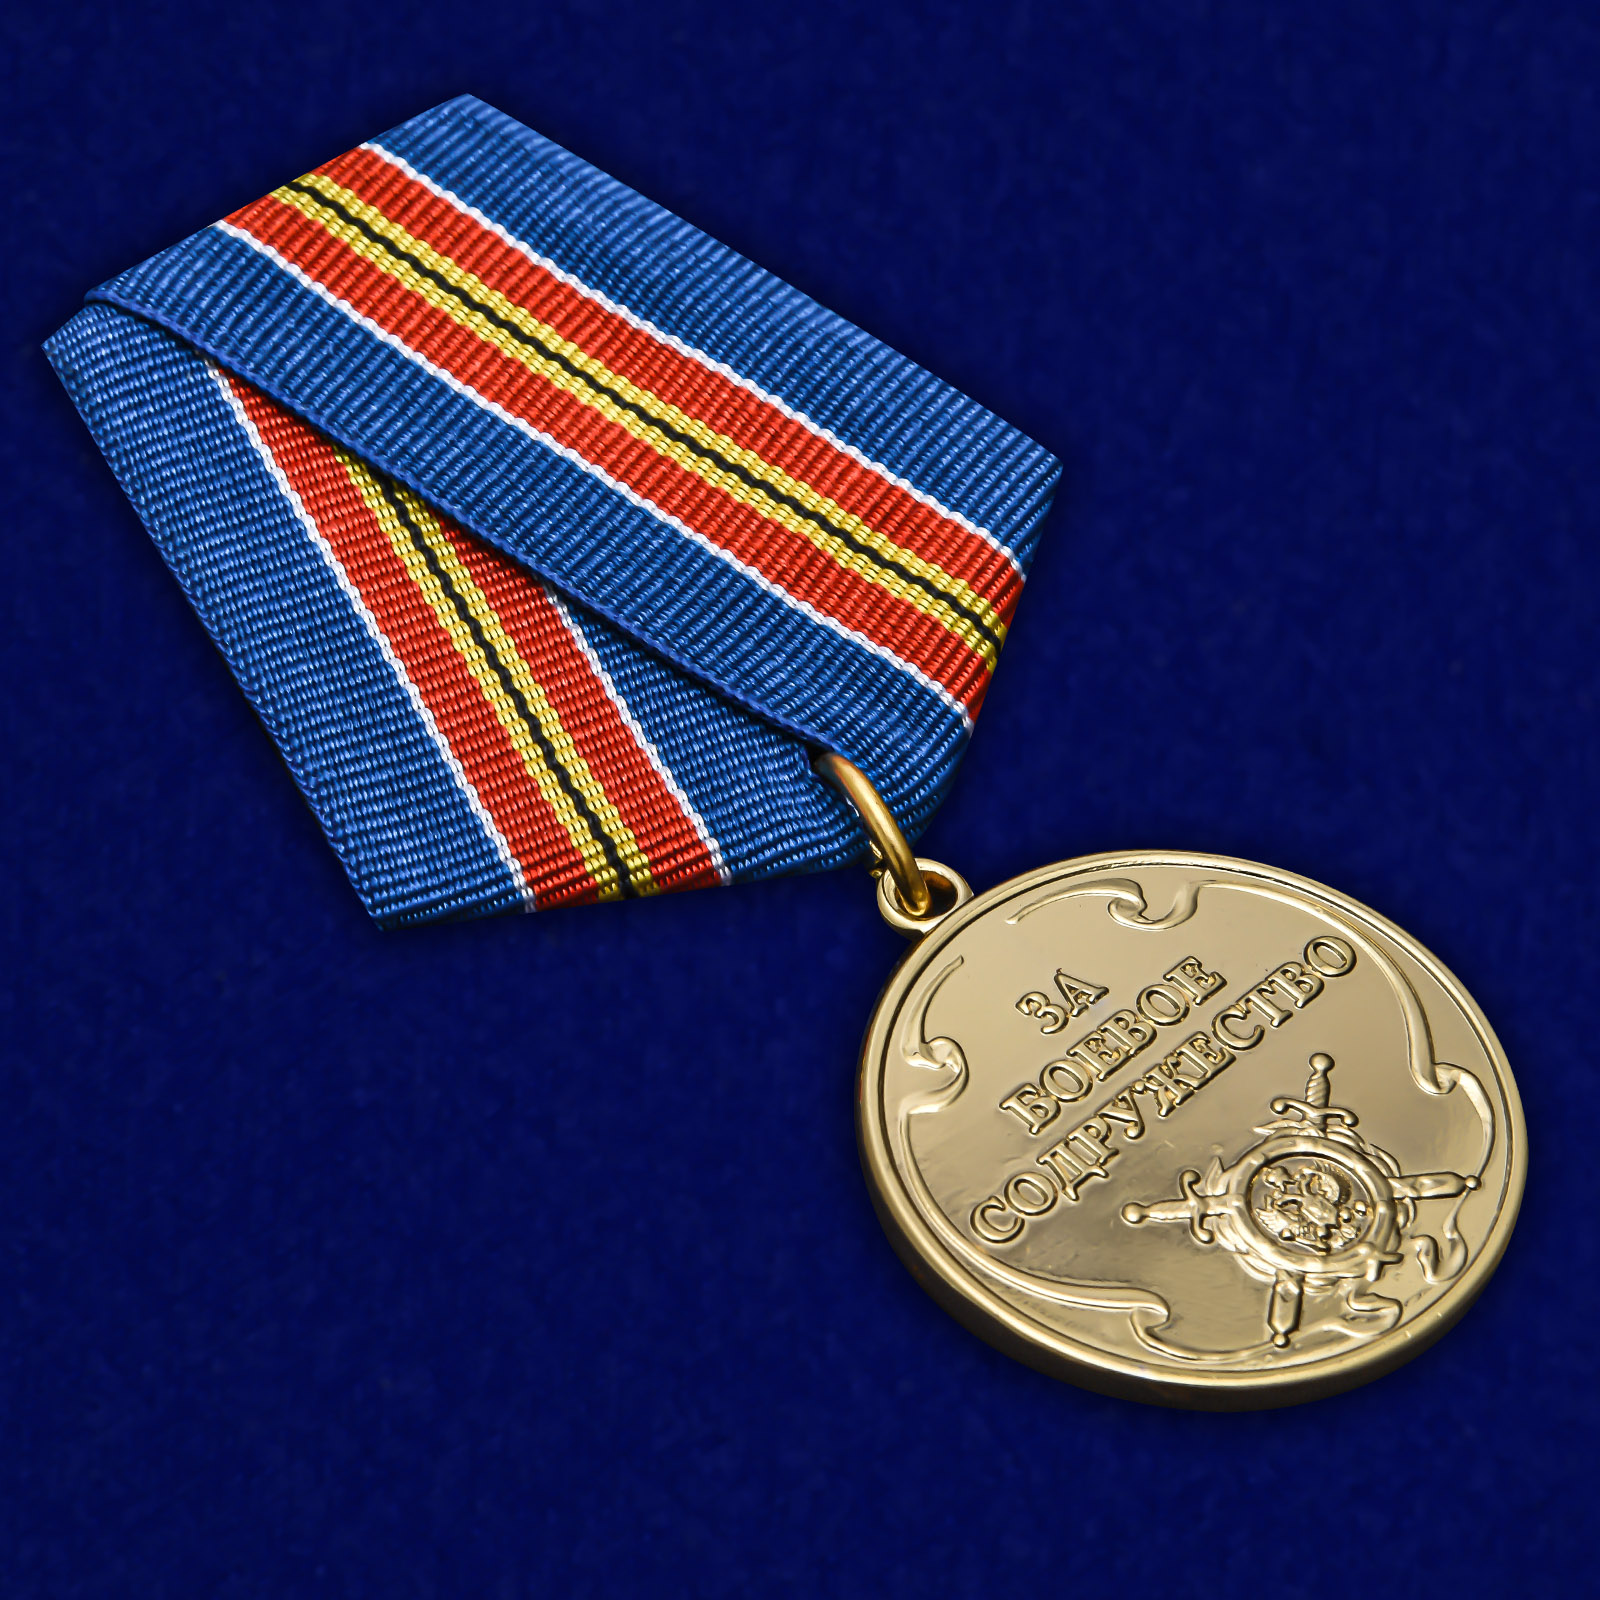 Медаль «За боевое содружество» (МВД)